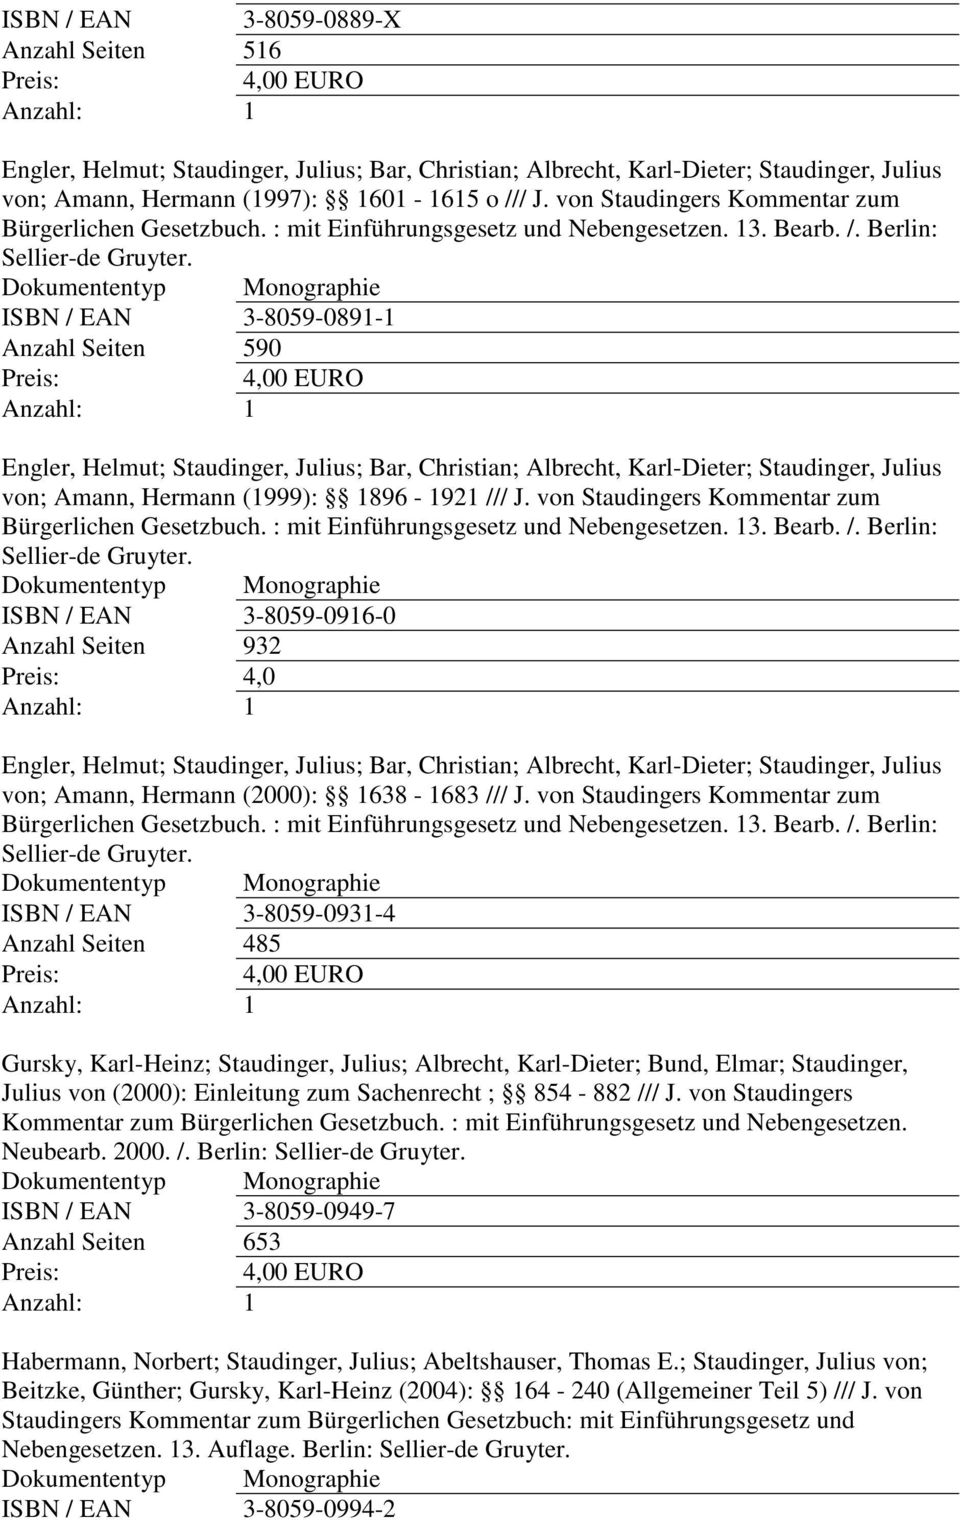 ISBN / EAN 3-8059-0891-1 Anzahl Seiten 590 Engler, Helmut; Staudinger, Julius; Bar, Christian; Albrecht, Karl-Dieter; Staudinger, Julius von; Amann, Hermann (1999): 1896-1921 /// J.